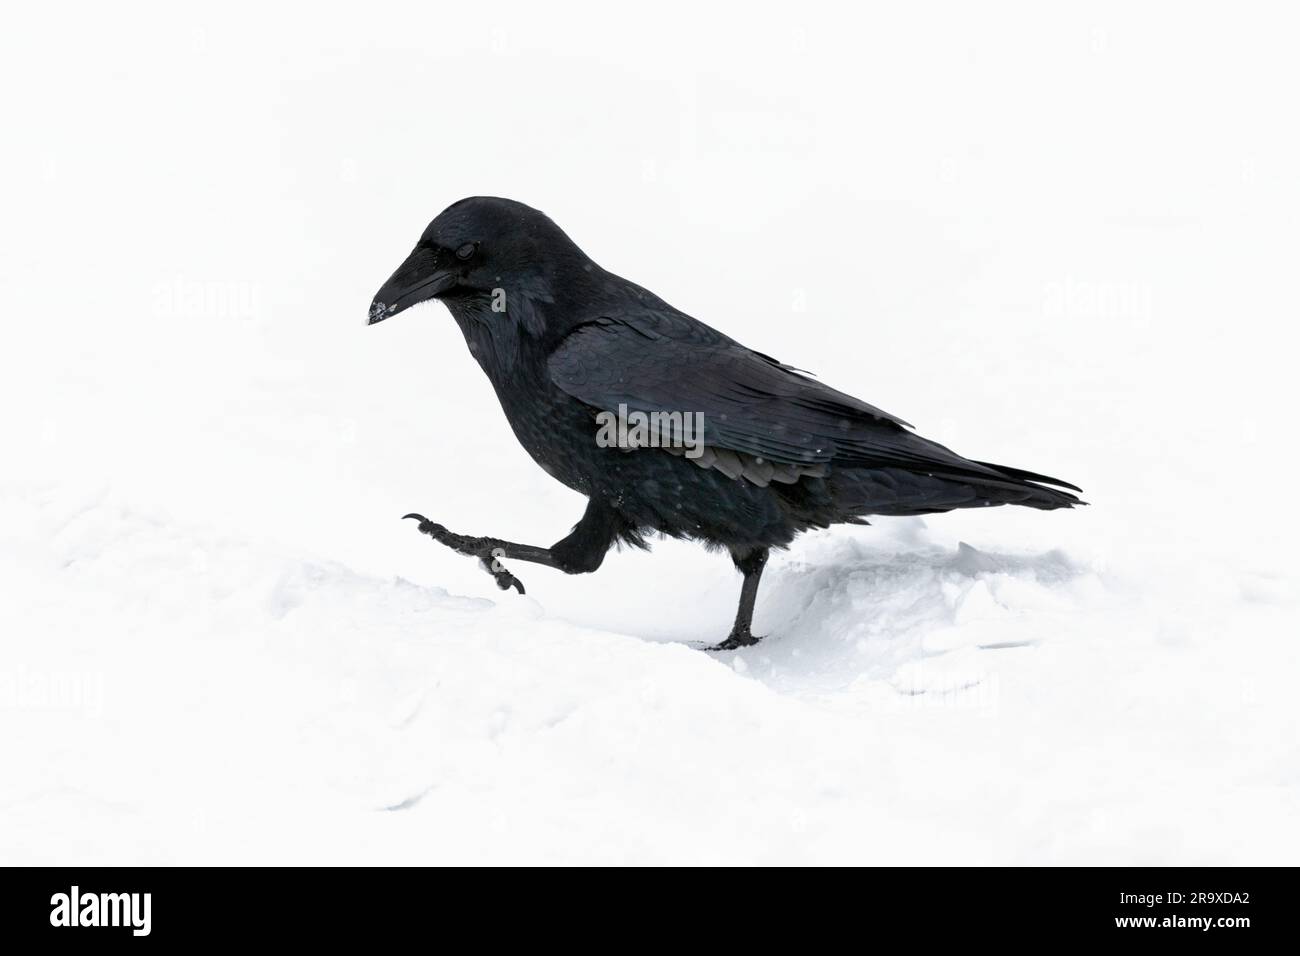 Grand corbeau, Corvus corax, un seul des oiseaux adultes walking in snow lors d'une averse de neige, Jasper, Canada, Novembre Banque D'Images